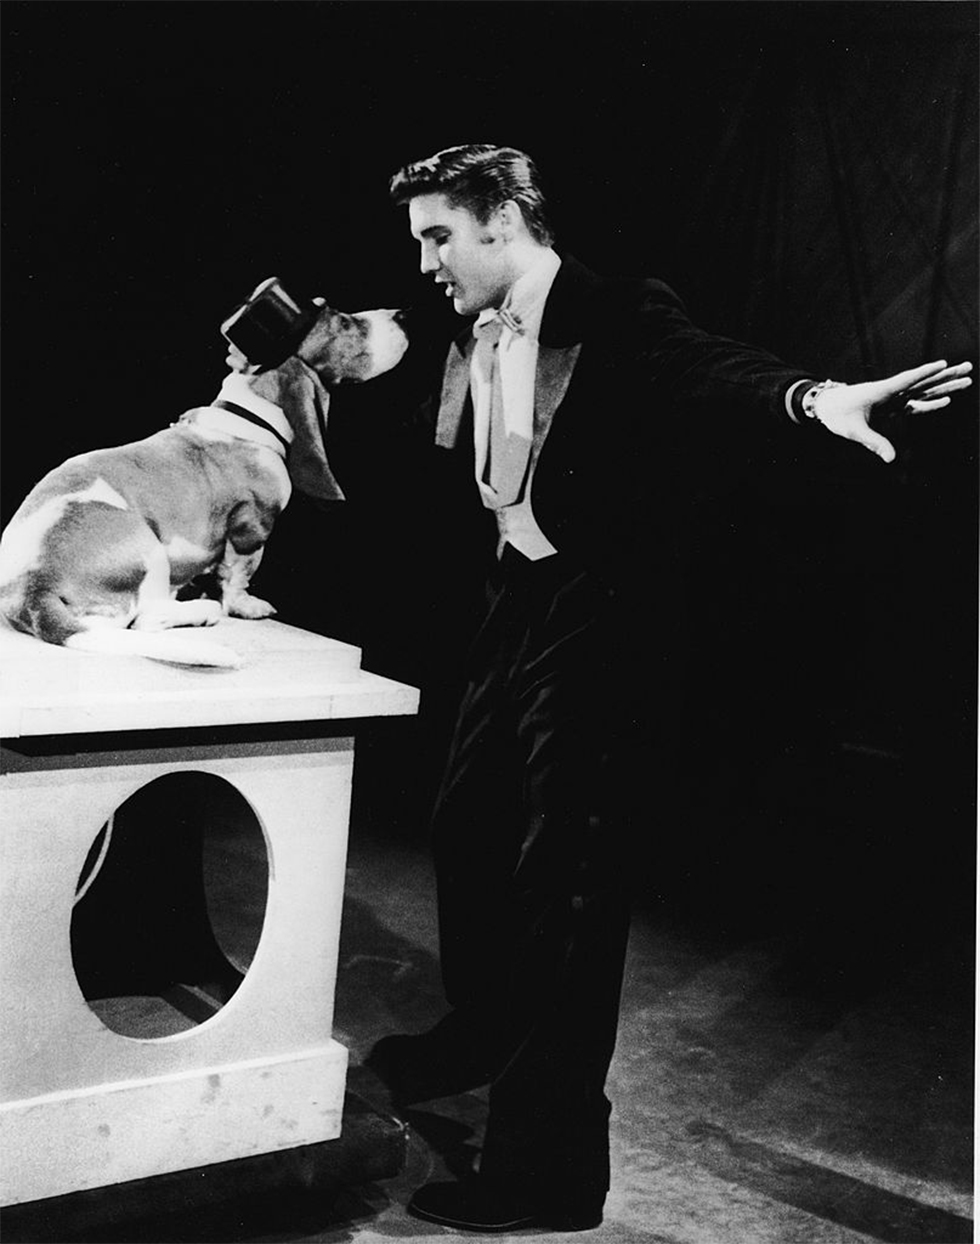 עם השיר "Hound Dog" בתוכנית של סטיב אלן בשנת 1956 (צילום: gettyimags) (צילום: gettyimags)